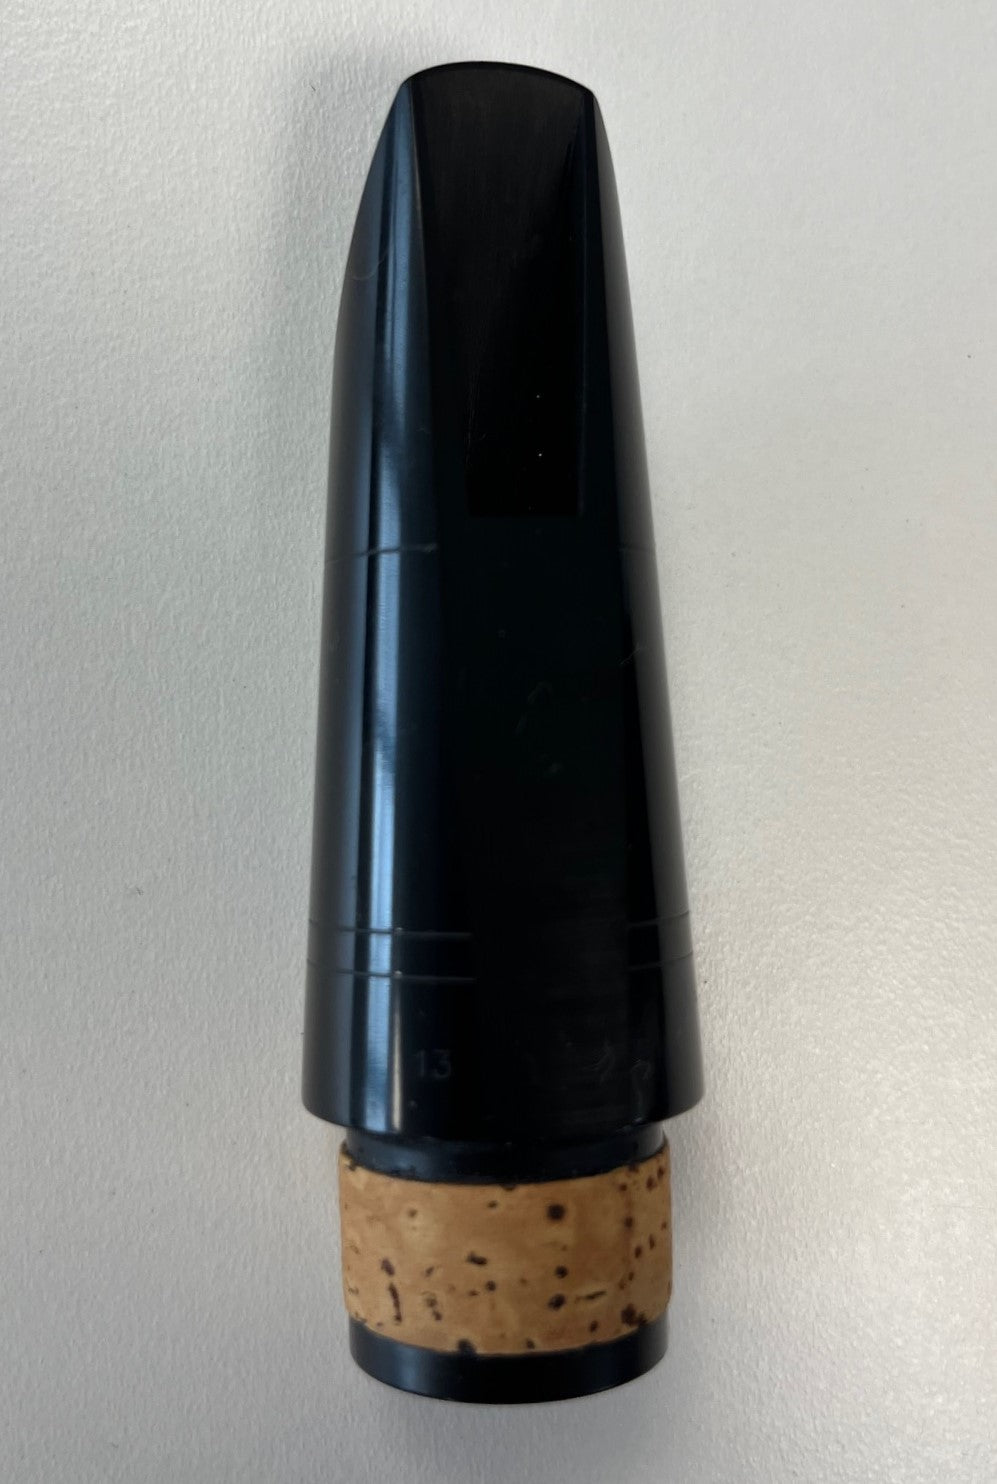 Vandoren 5RV 13 Clarinet Mouthpiece (pre-owned)